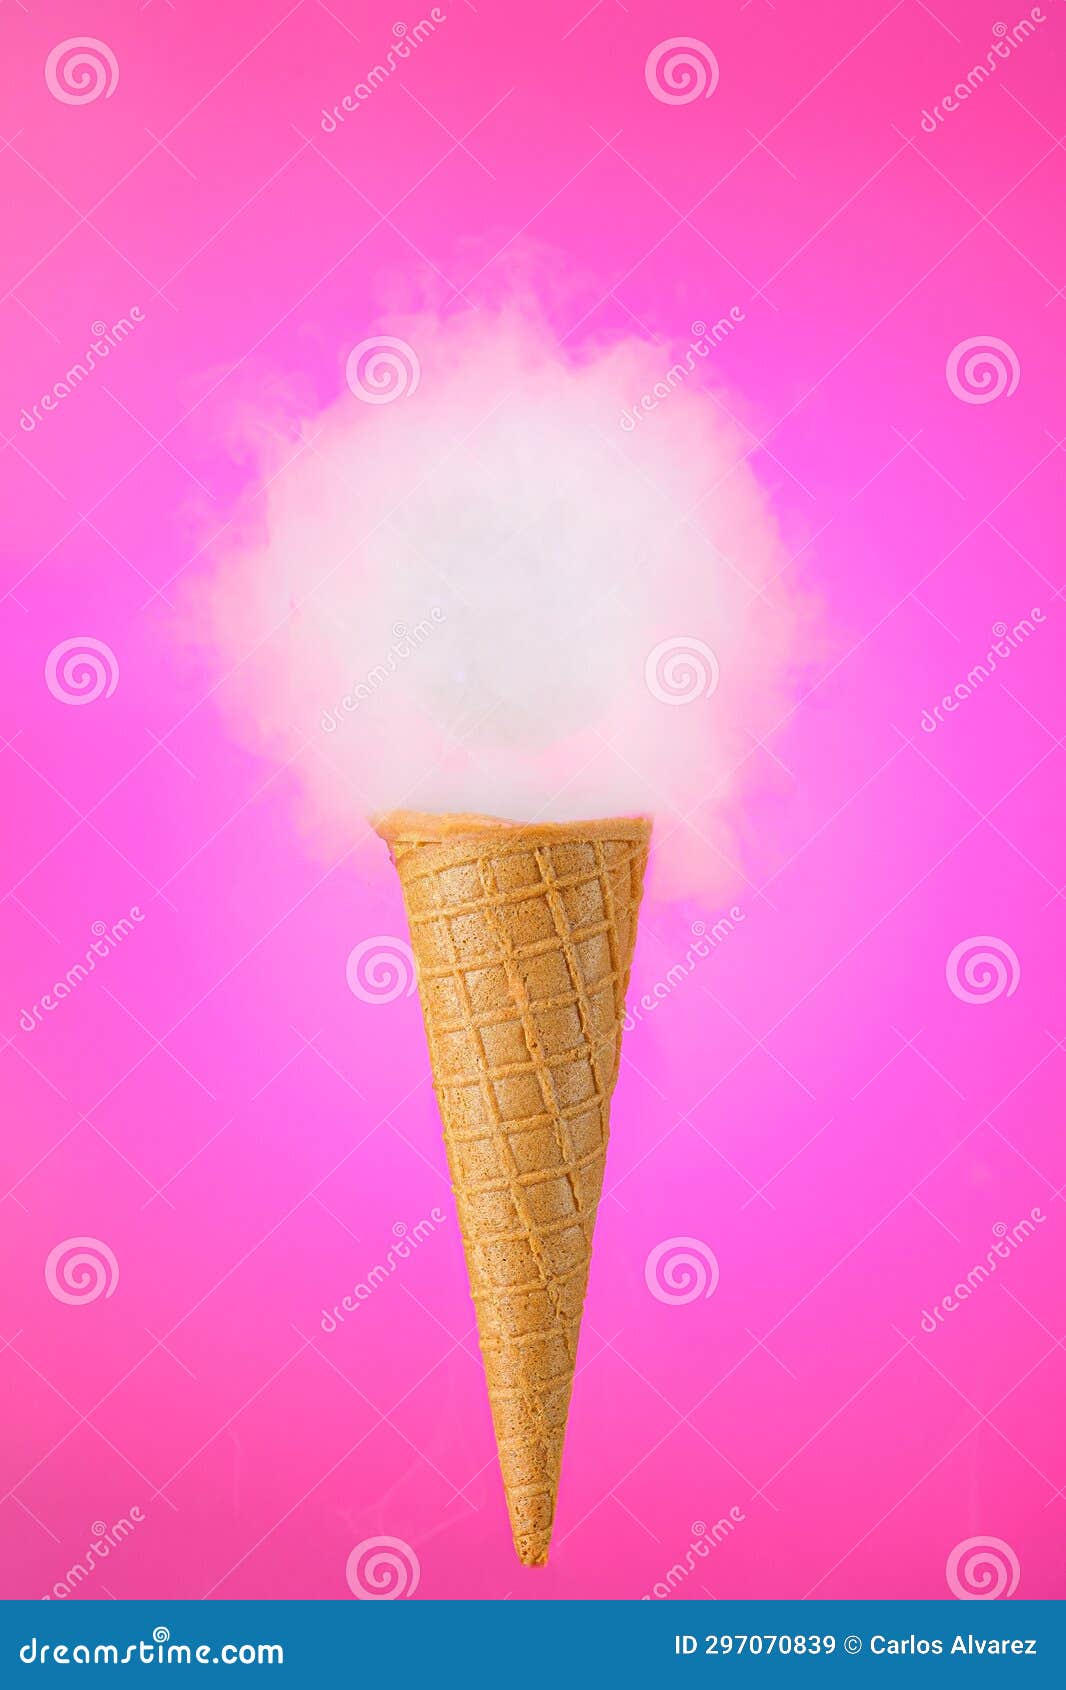 helado de cucurucho de galleta de nube sobre fondo fucsia